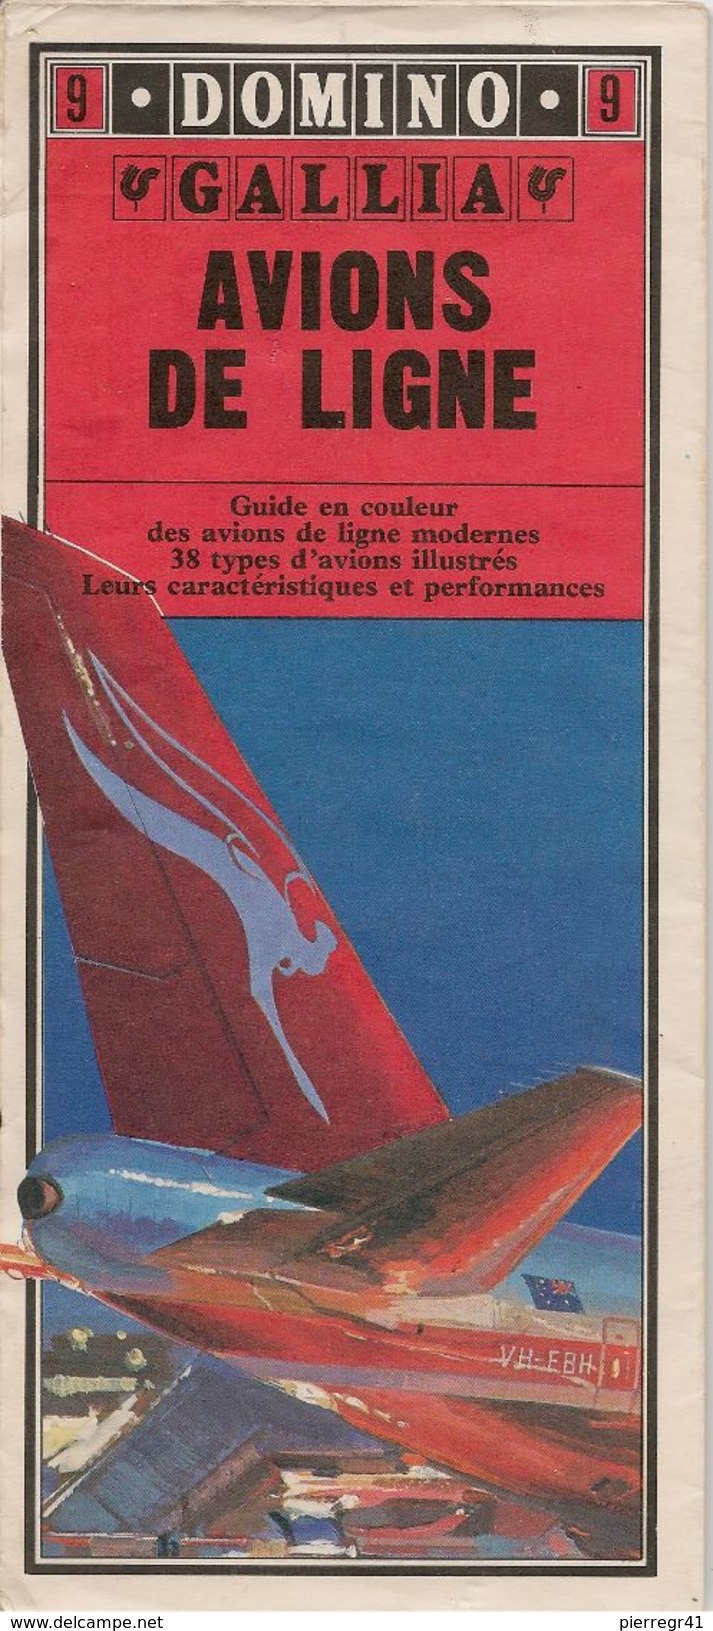 GUIDE-DOMINO-N°9-GALLIA-1979-AVIONS De LIGNE-38 Types D AVIONS De LIGNES MODERNES-Ft CARTE ROUTIERE-TBE- - Handbücher